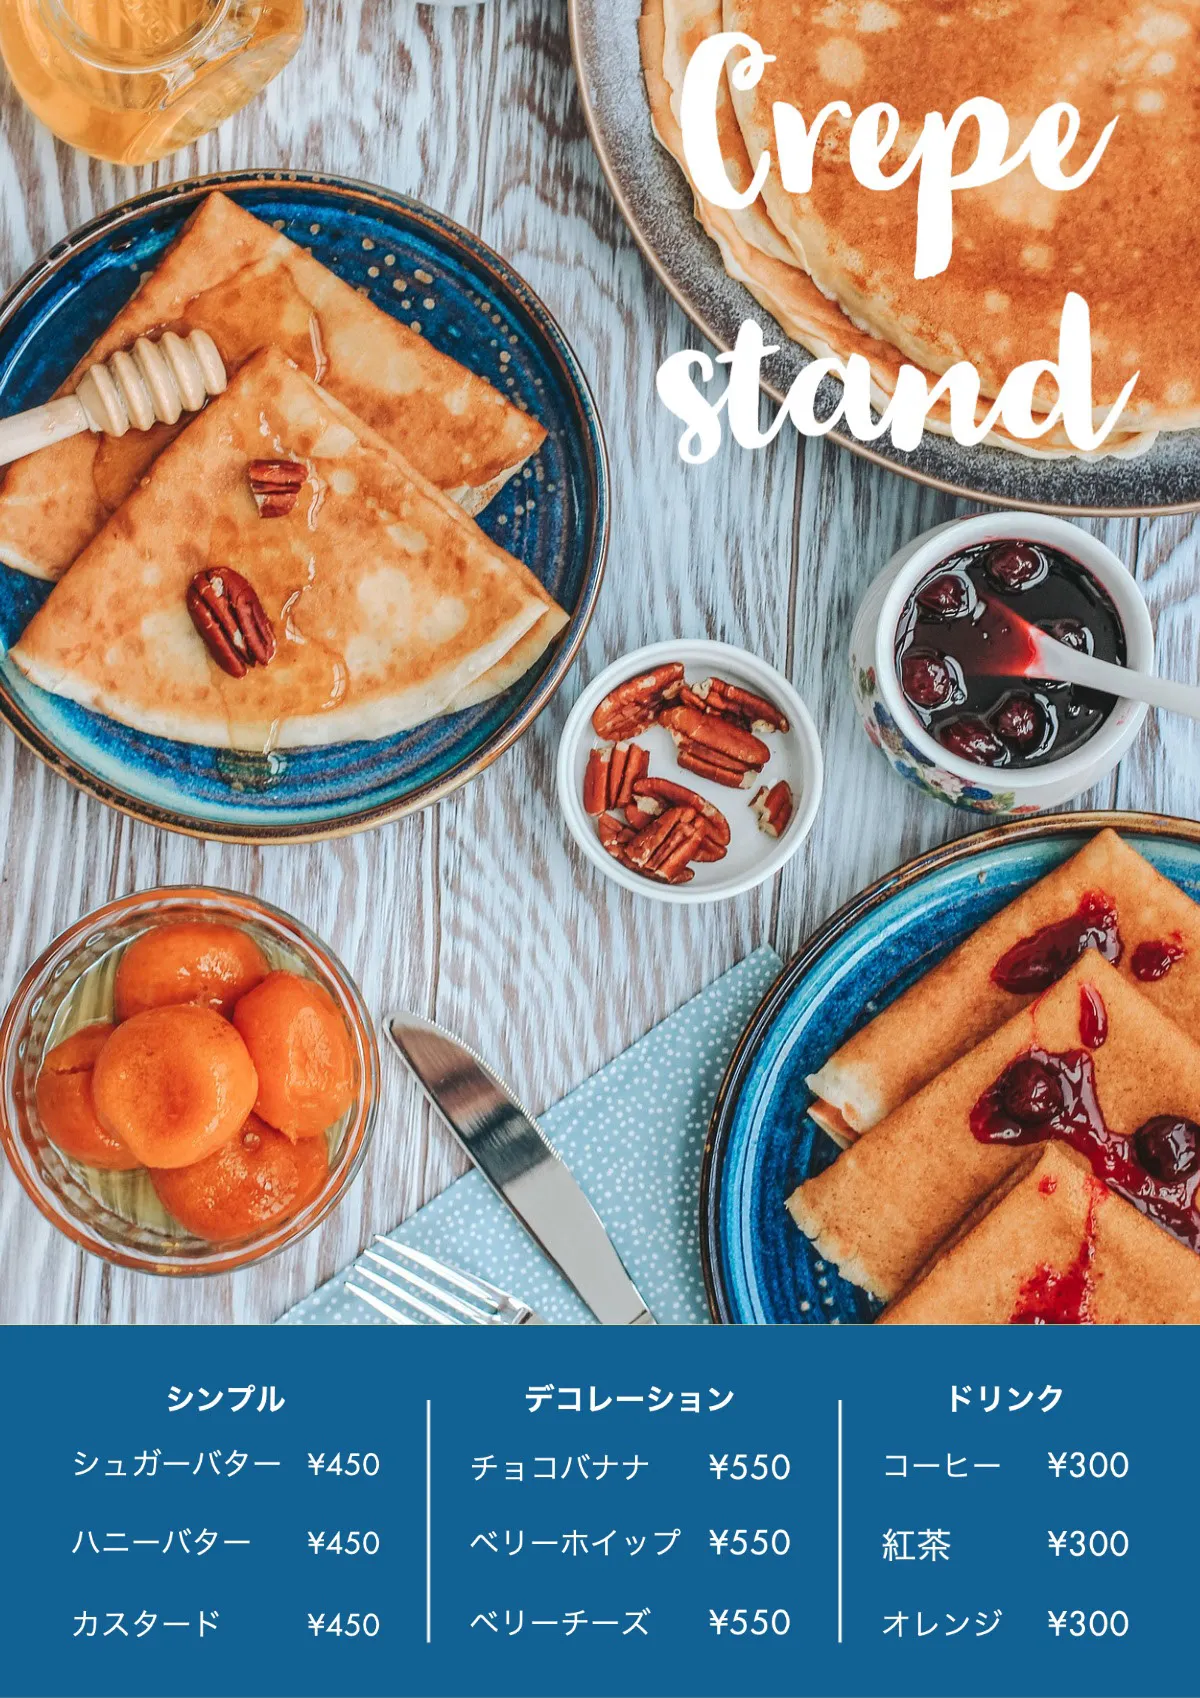 Crepe stand menu